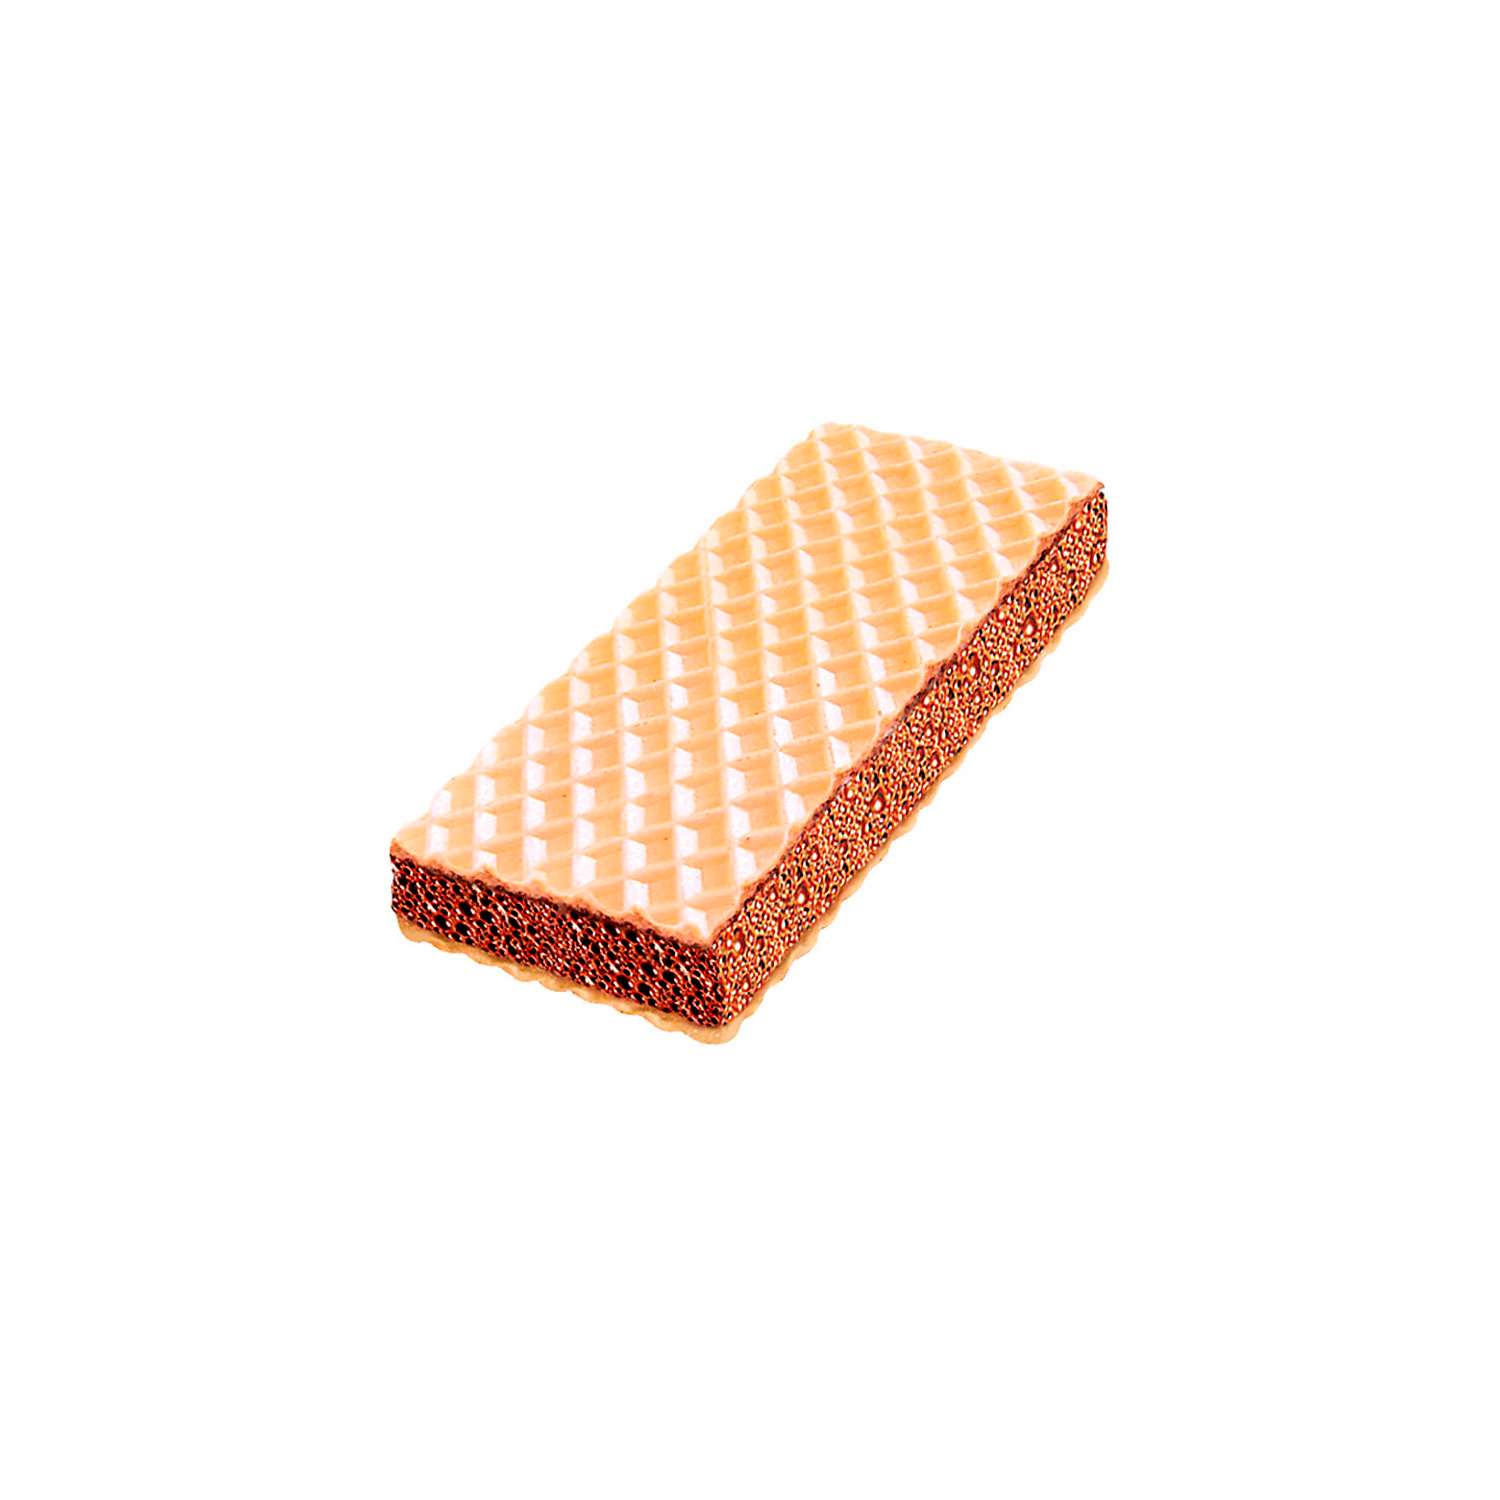 Вафельный сэндвич KDV с шоколадной начинкой коробка 3780 г - фото 1